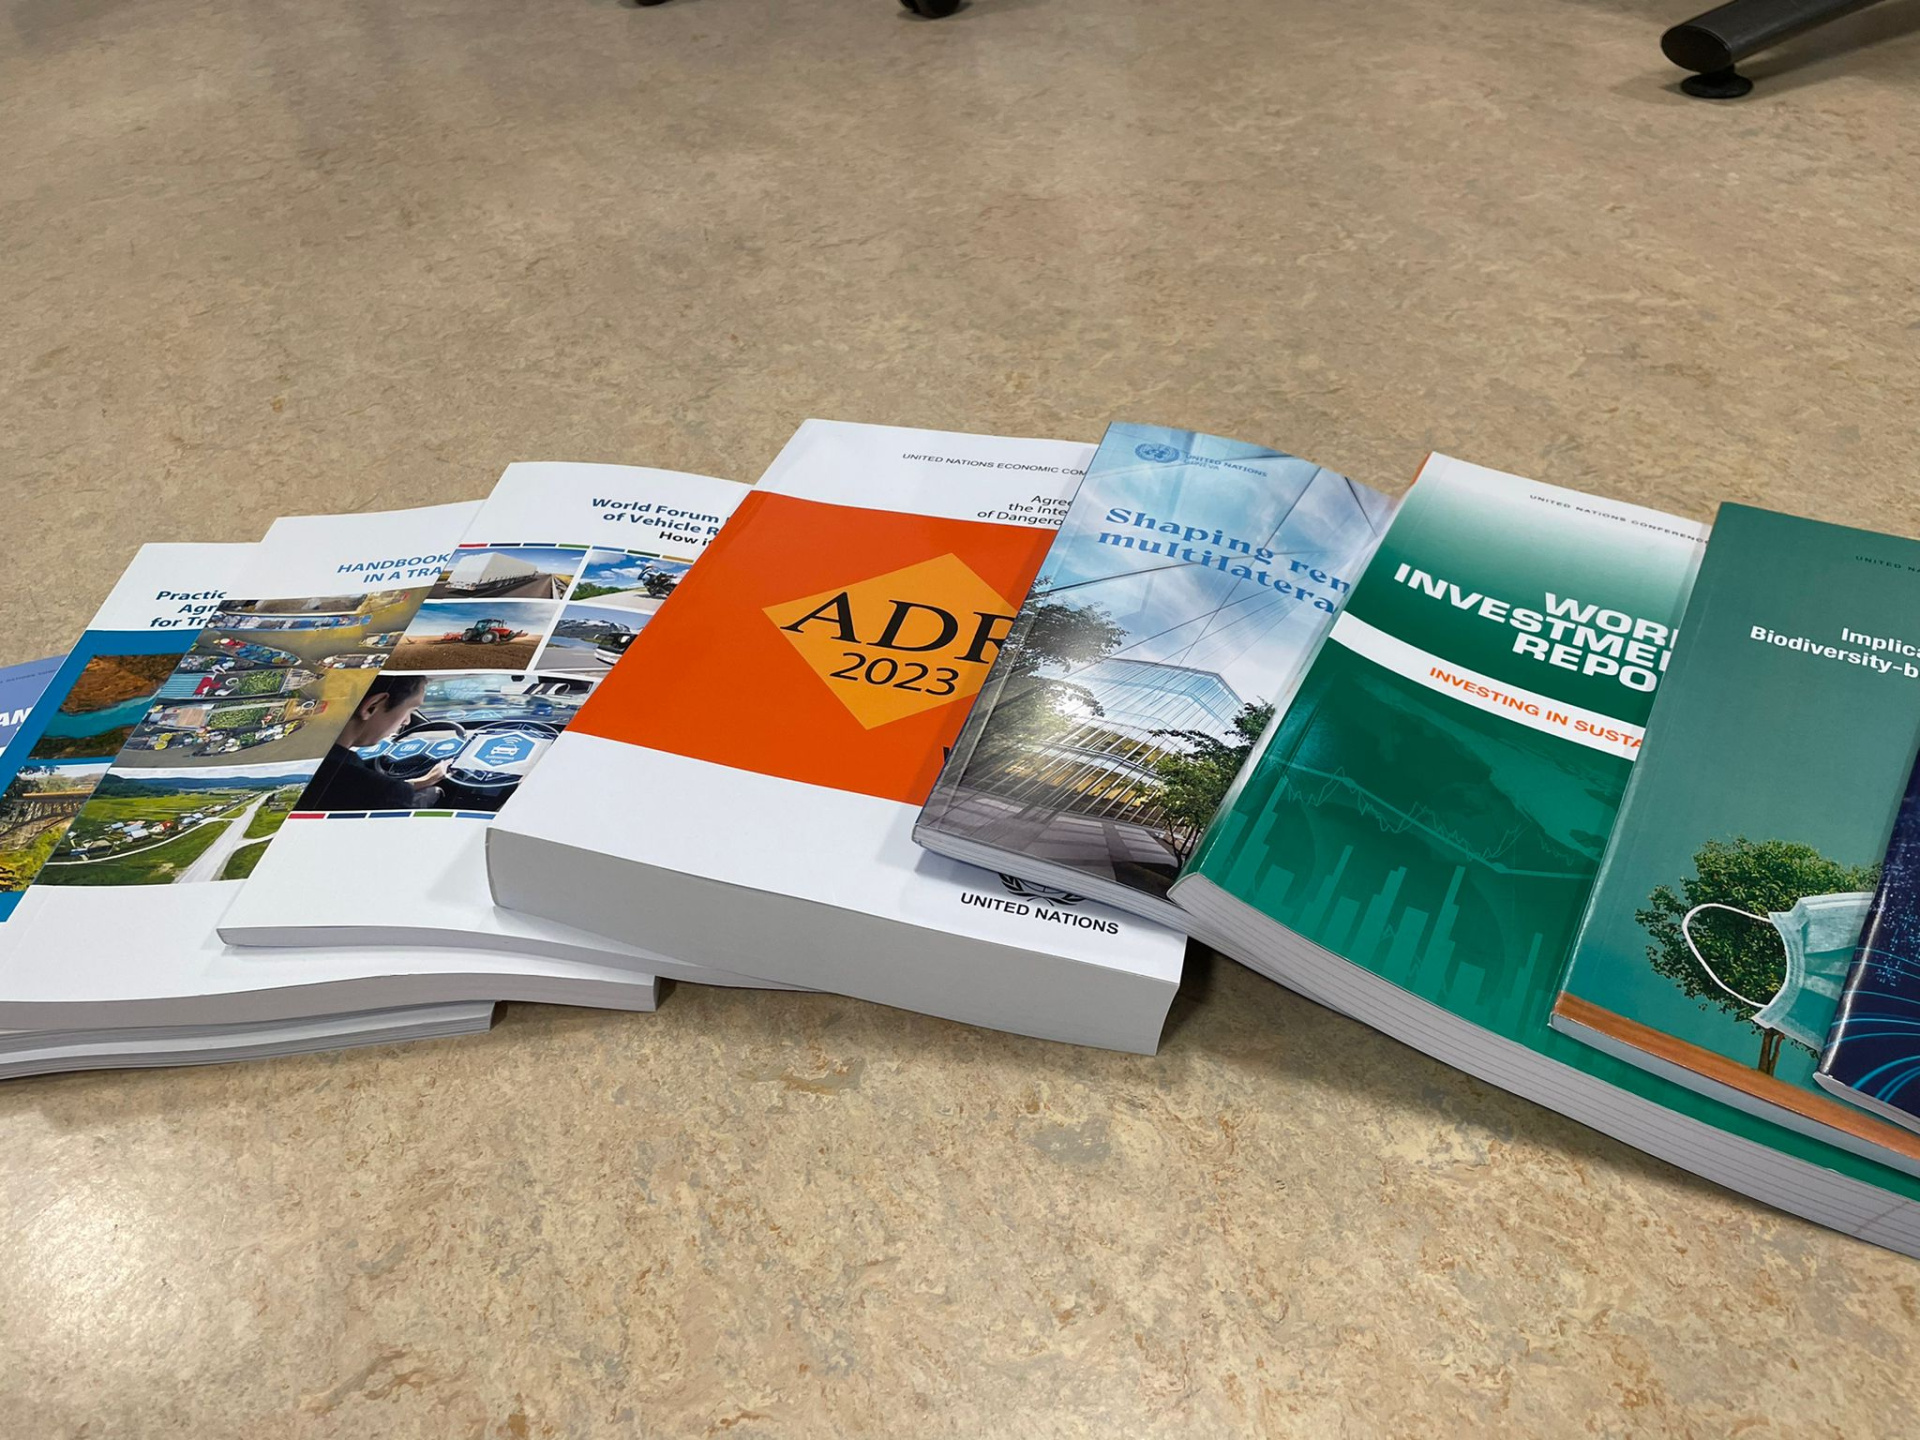 A range of different UN Publications